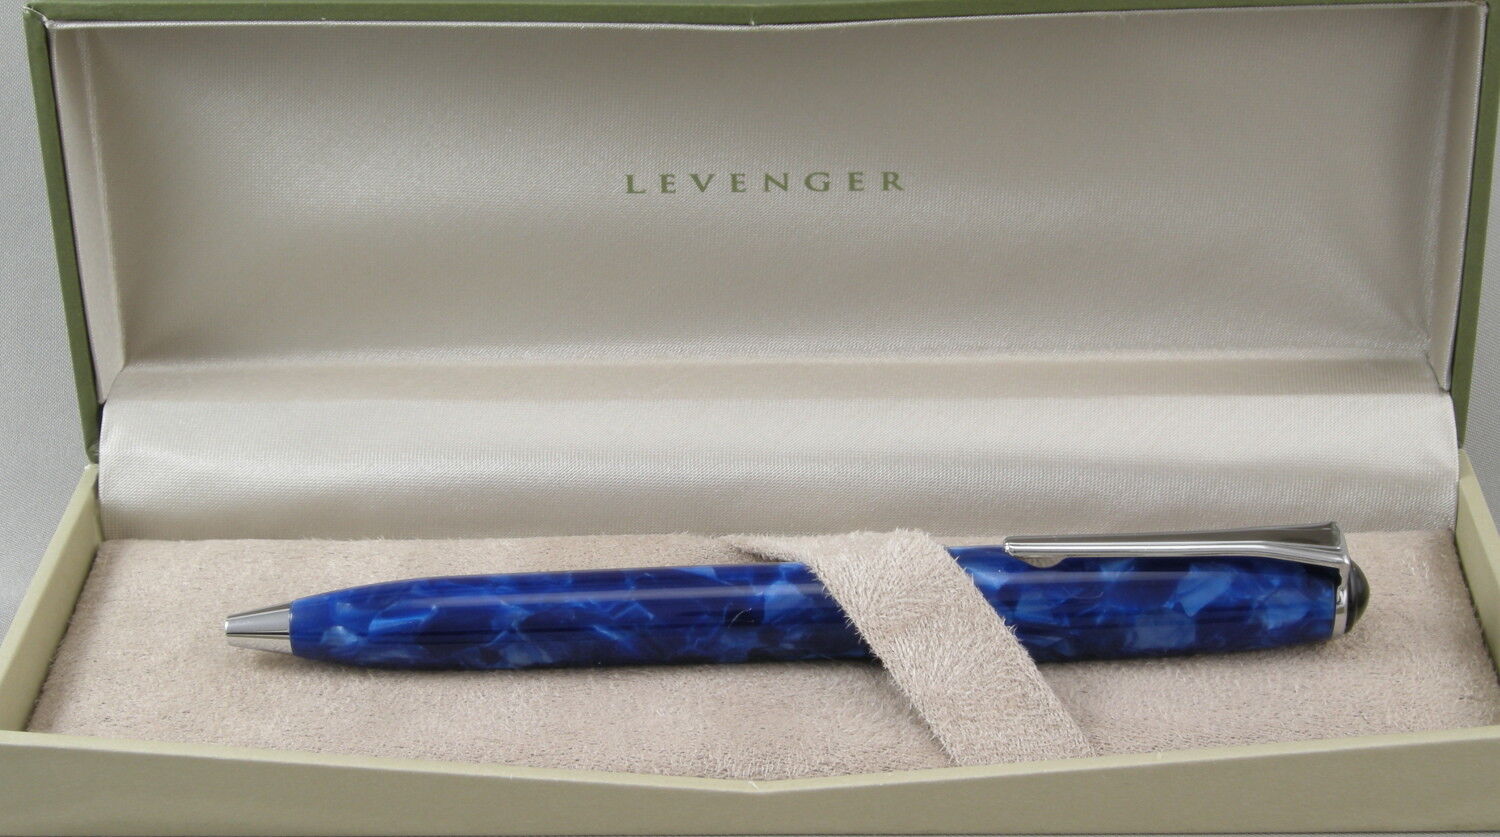 Levenger True Writer Marble Blue & Chrome Ballpoint Pen - New In Box